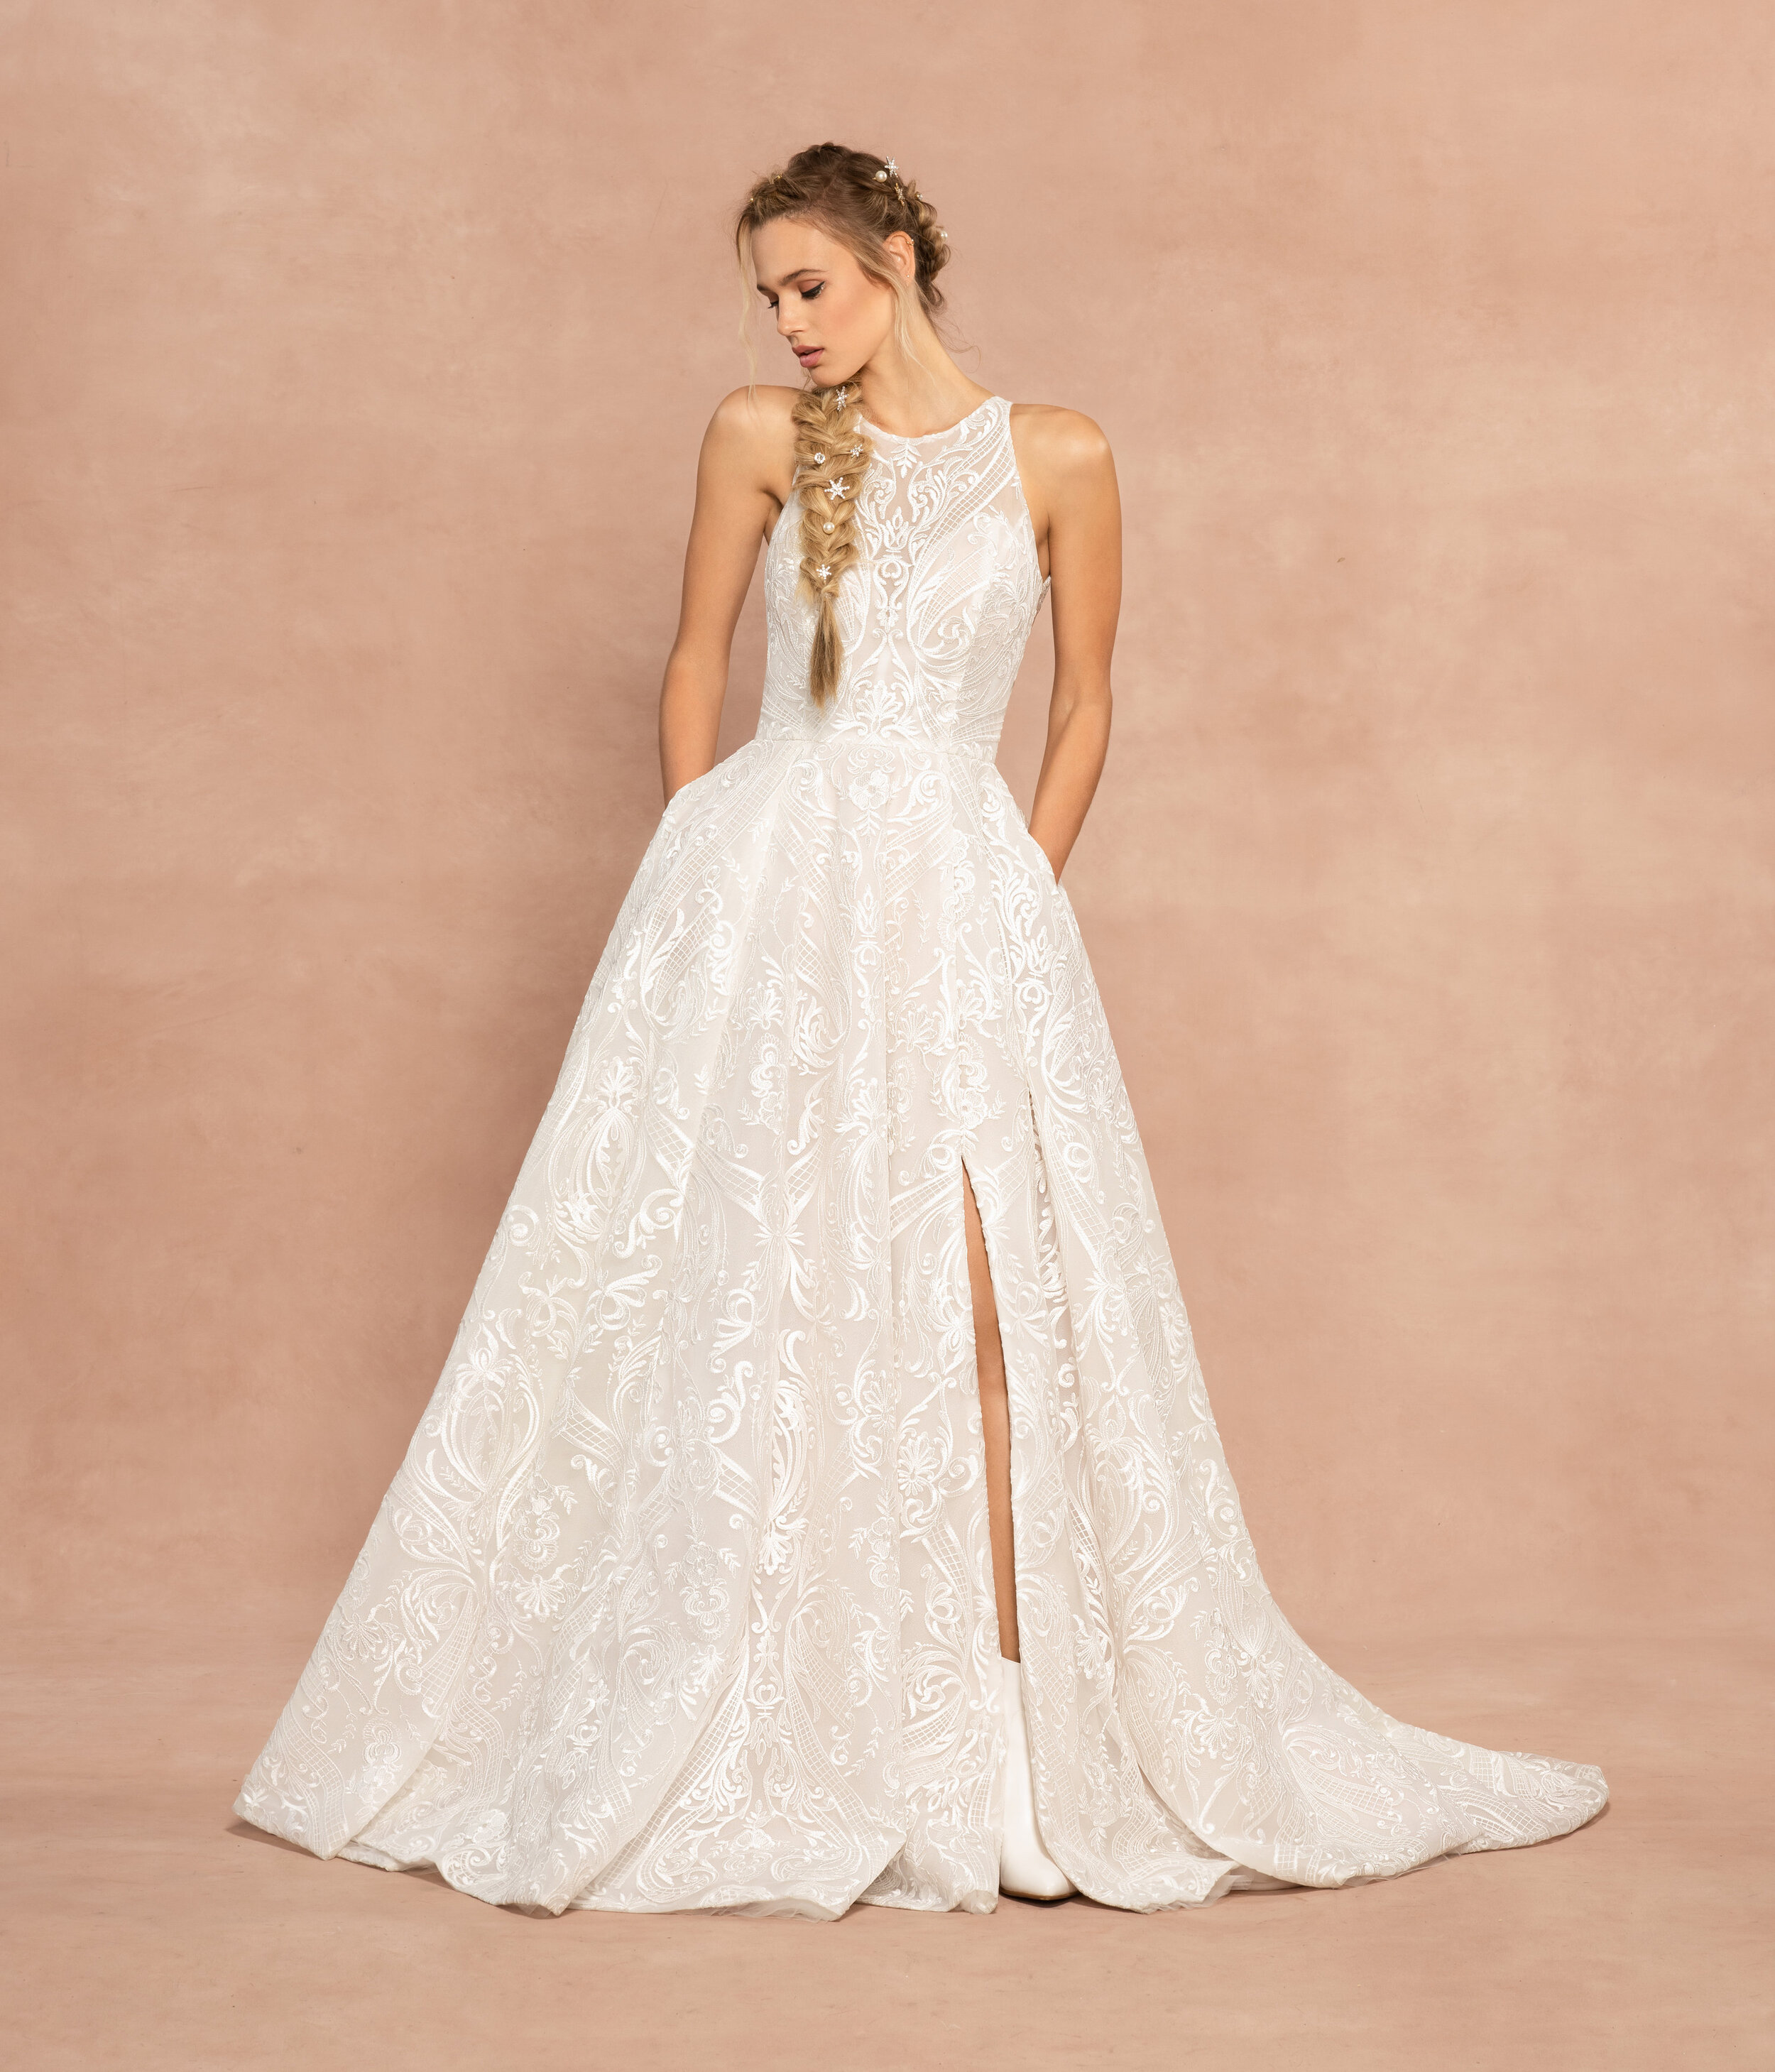 The Best of Hayley Paige Wedding Dress Sale｜a&bé bridal shop